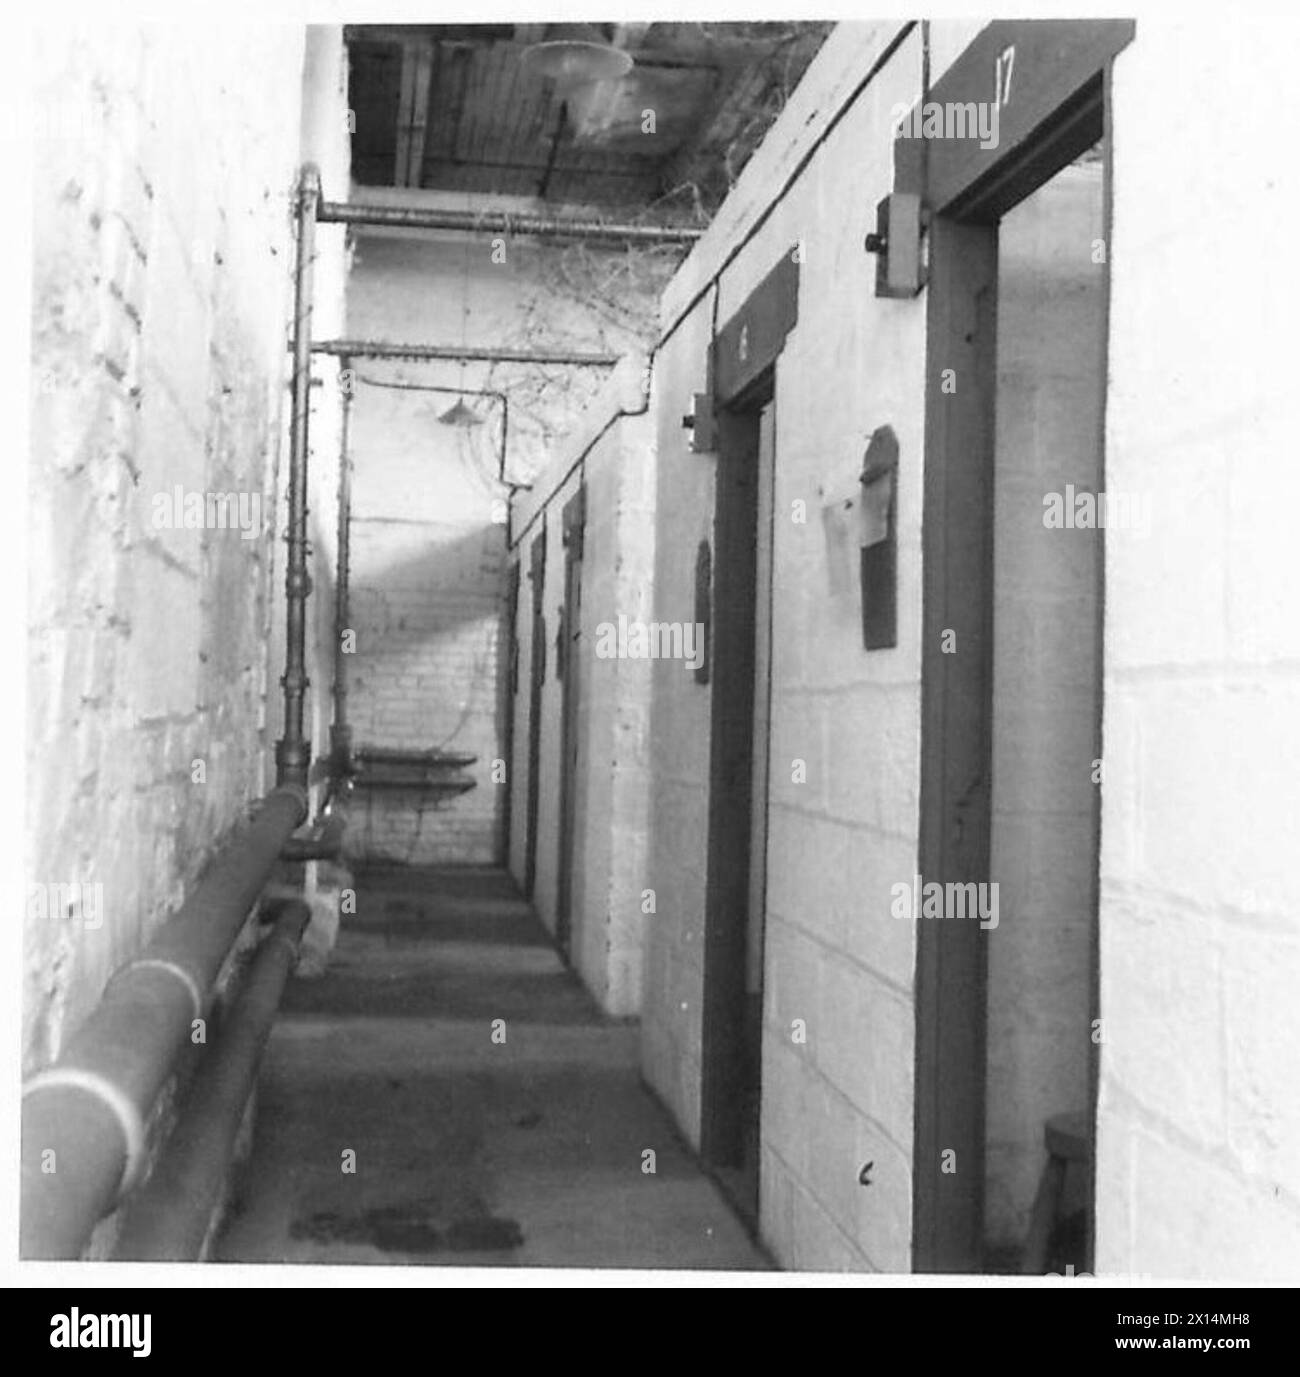 MILITÄRISCHE GEFANGENENBARACKE : CARRICKFERGUS - Zellen und Einzelräume: 4 Betonblöcke - Decken aus expandiertem Metall, verstärkt mit Stacheldraht britische Armee Stockfoto